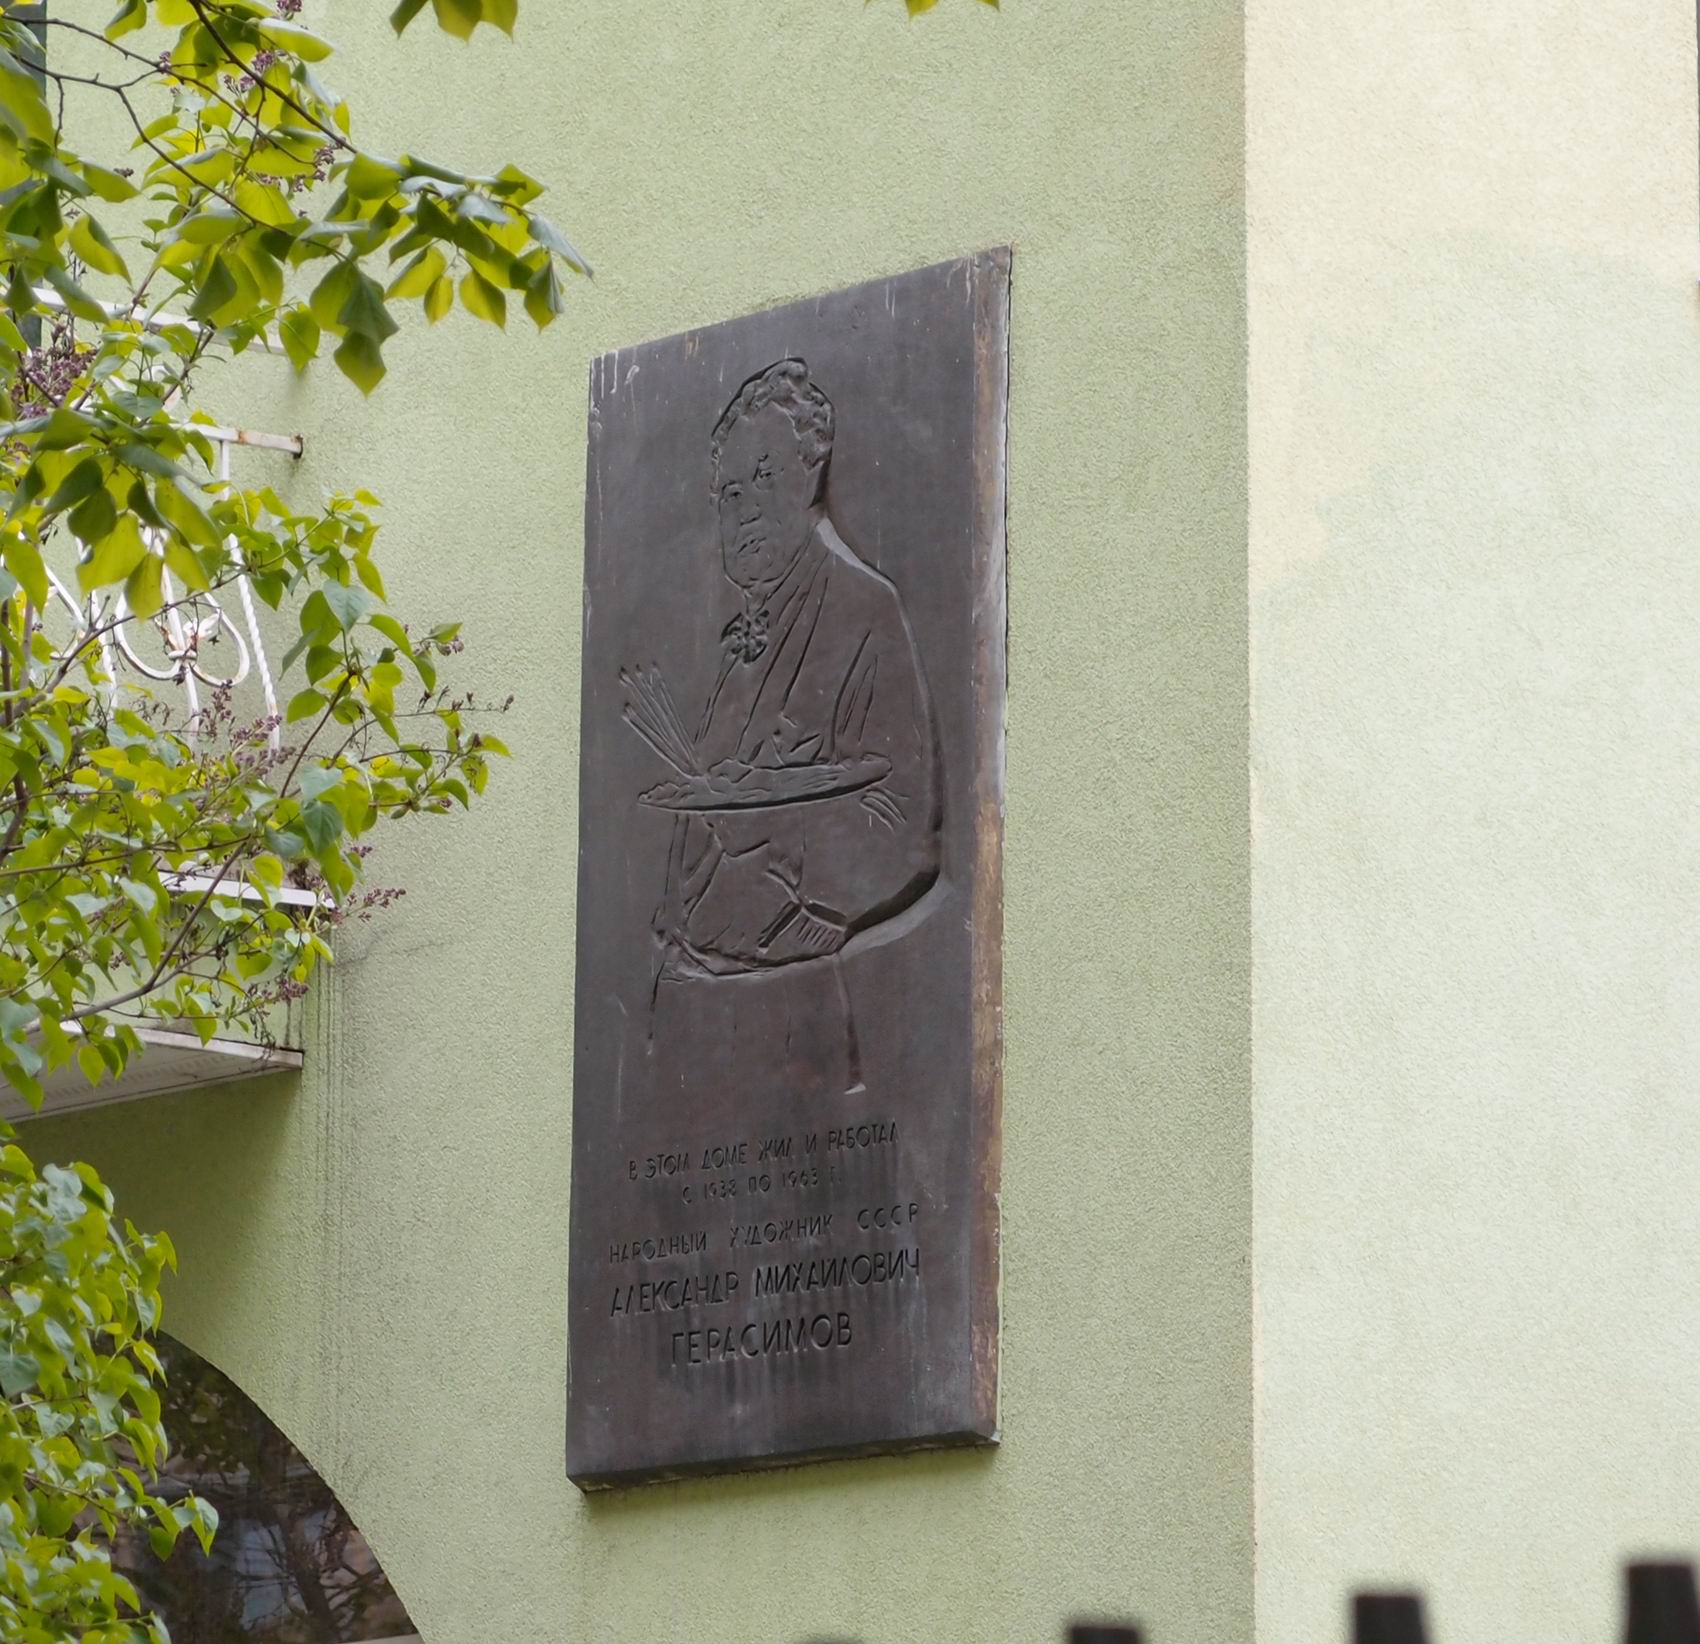 Мемориальная доска Герасимову А.М. (1881–1963), ск. Л.И.Чуфаровская, арх. Г.И.Гаврилов, на улице Левитана, дом 6а, открыта 28.9.1976.